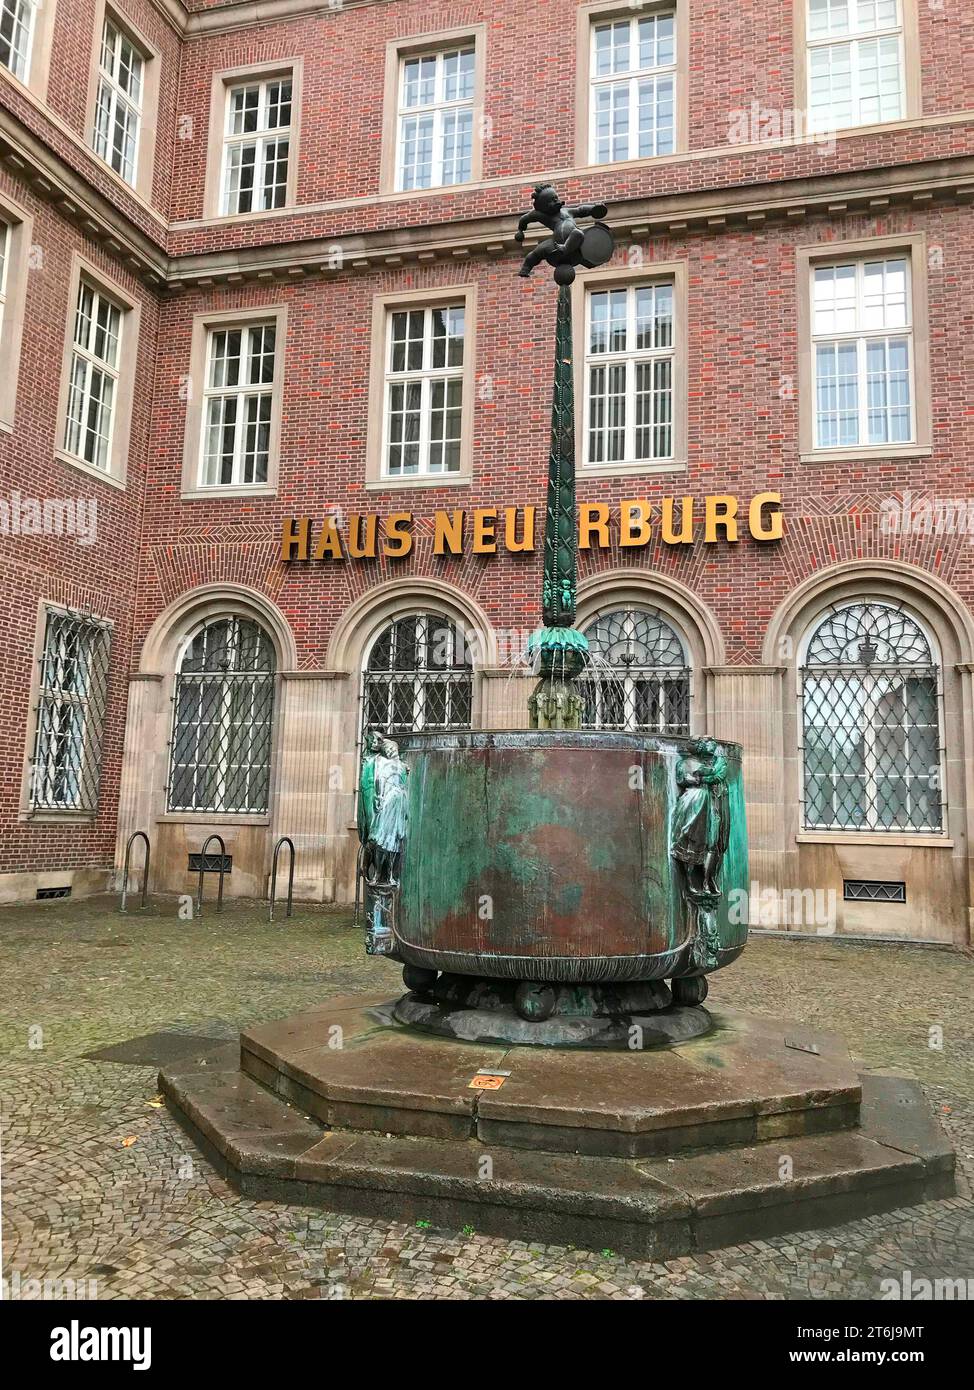 Neuerburg Maison avec le Fastnachtsbrunnen ou Fontaine du Carnaval, Cologne, Rhénanie du Nord-Westphalie, Allemagne, Europe Banque D'Images